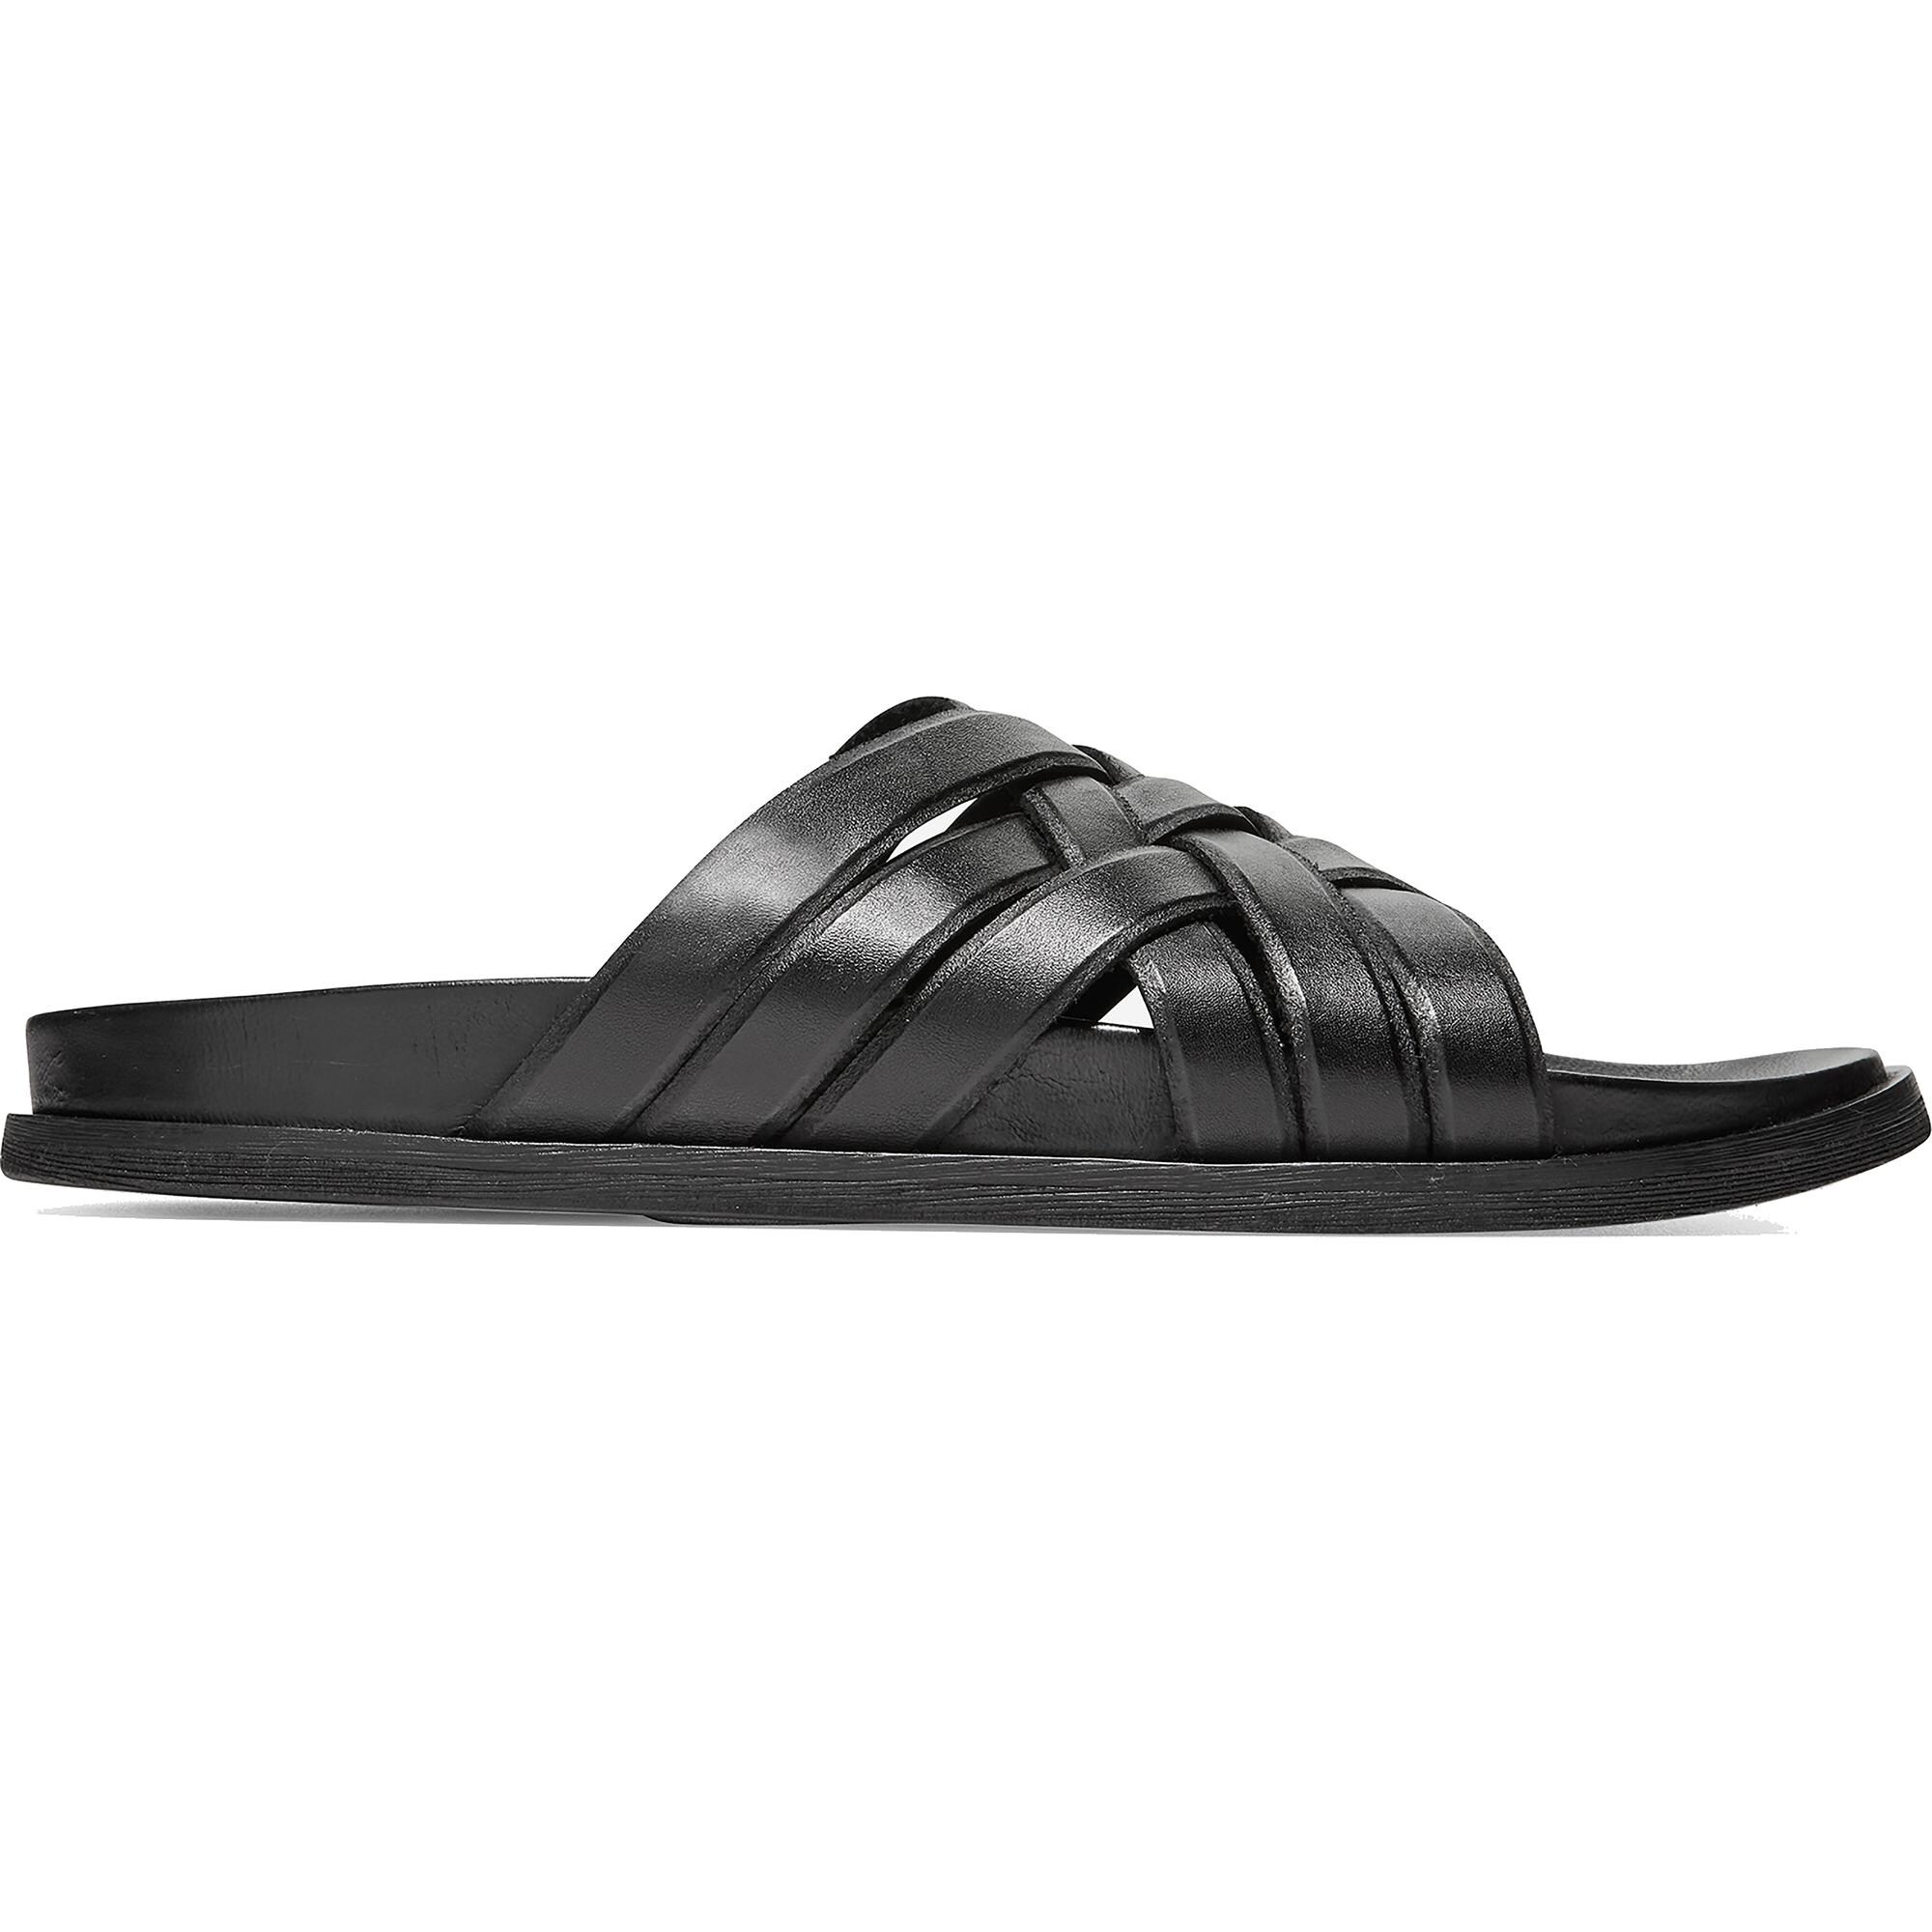 cole haan men's sandals black